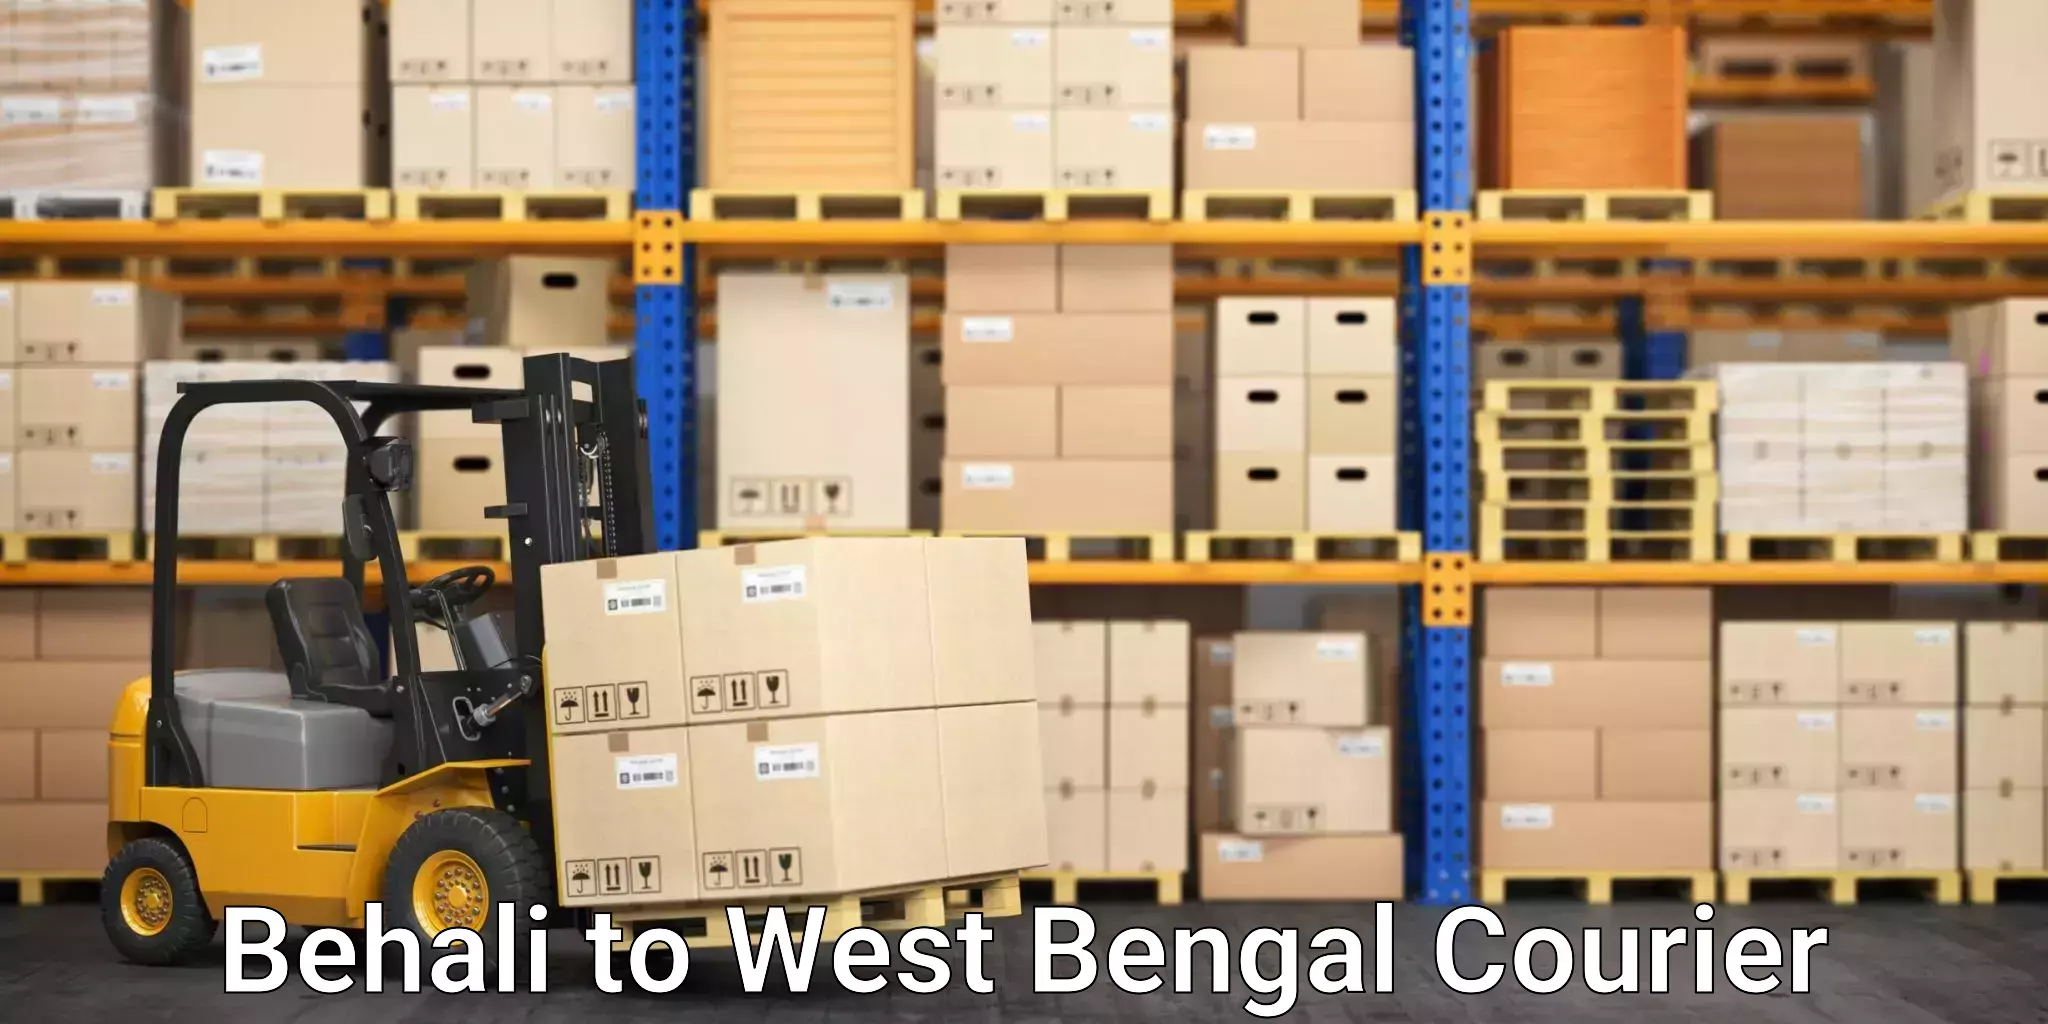 Cost-effective courier options Behali to Darjeeling